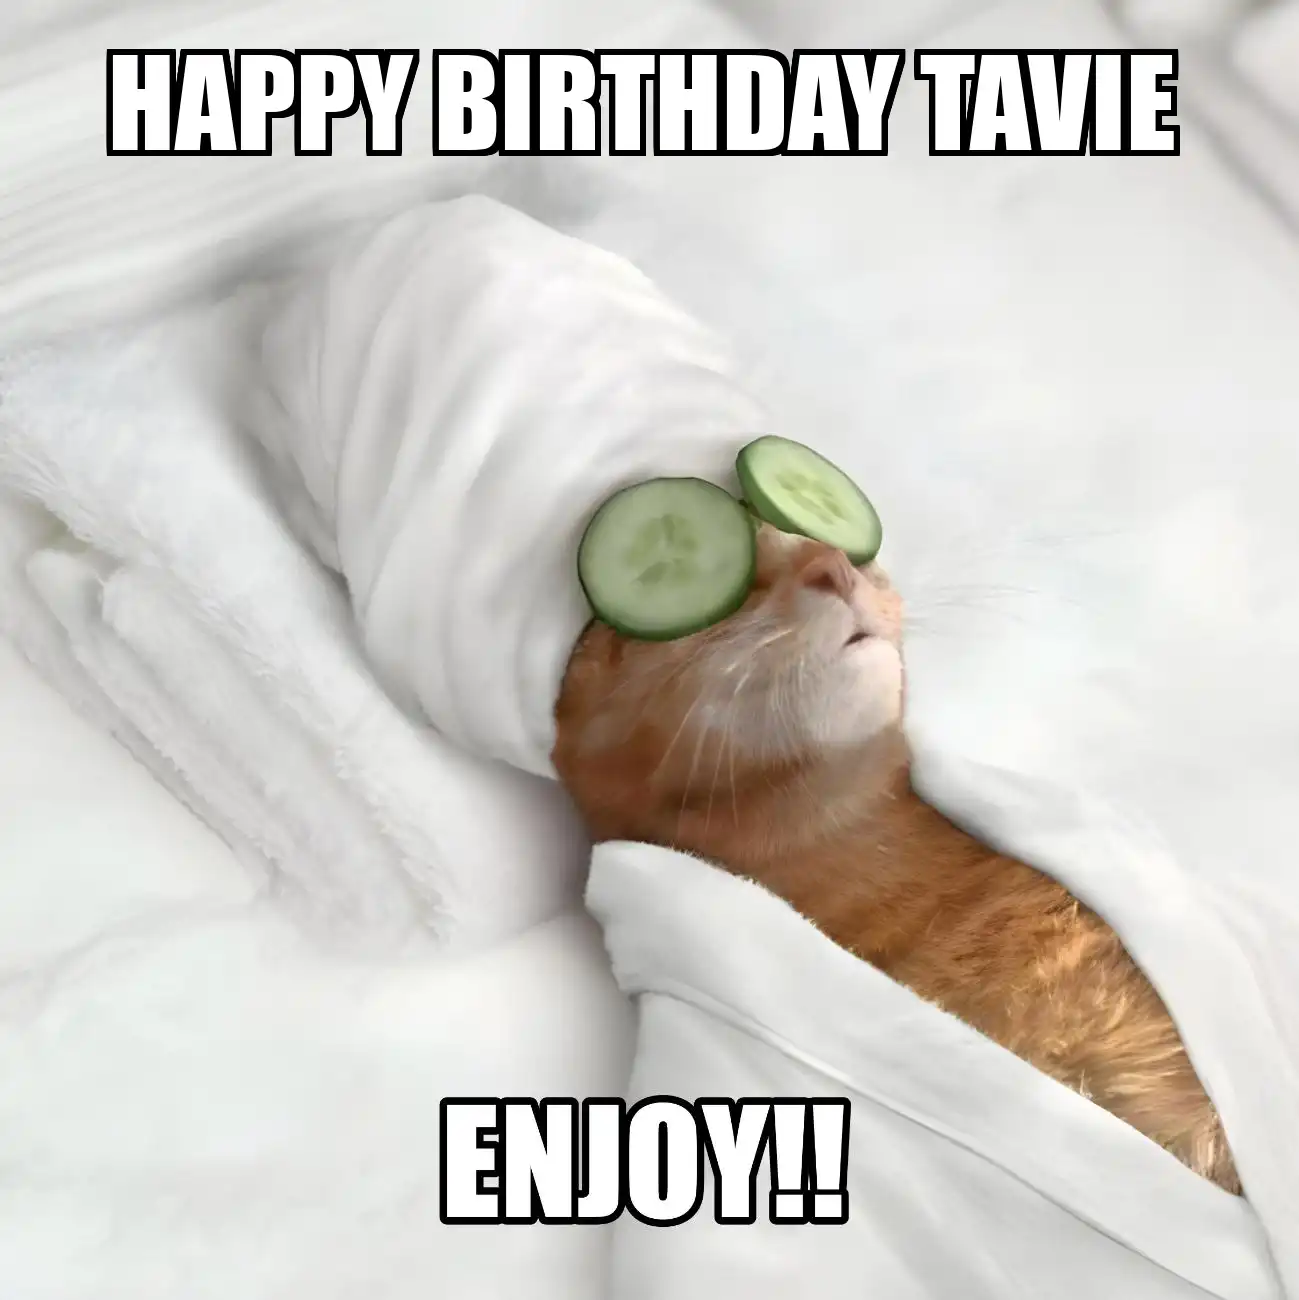 Happy Birthday Tavie Enjoy Cat Meme